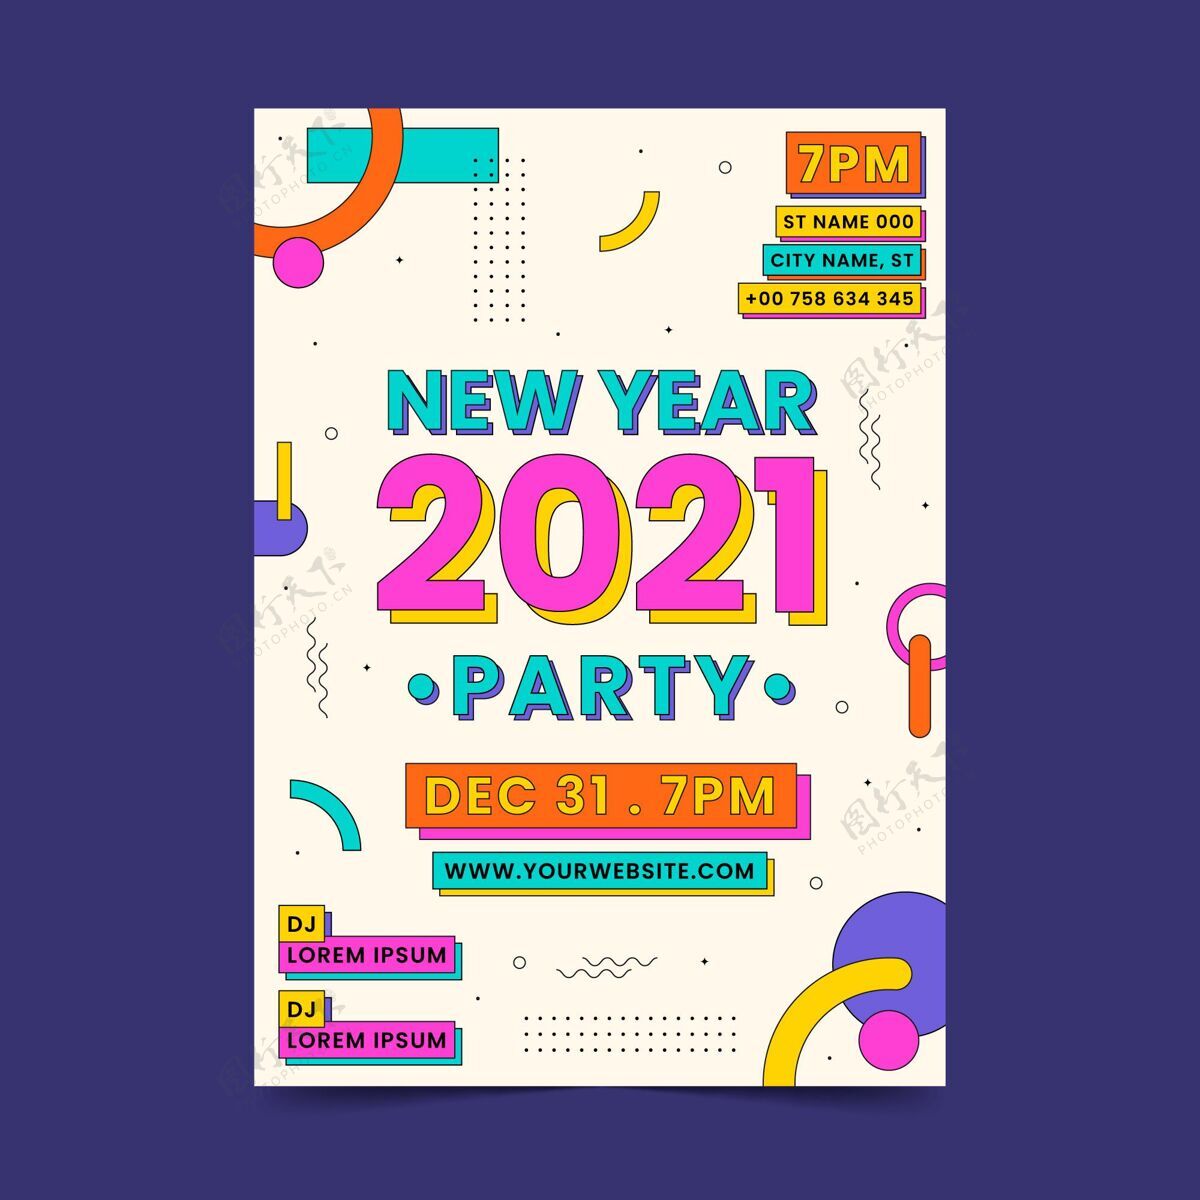 快乐平面设计2021年新年派对海报模板模板节日夏娃